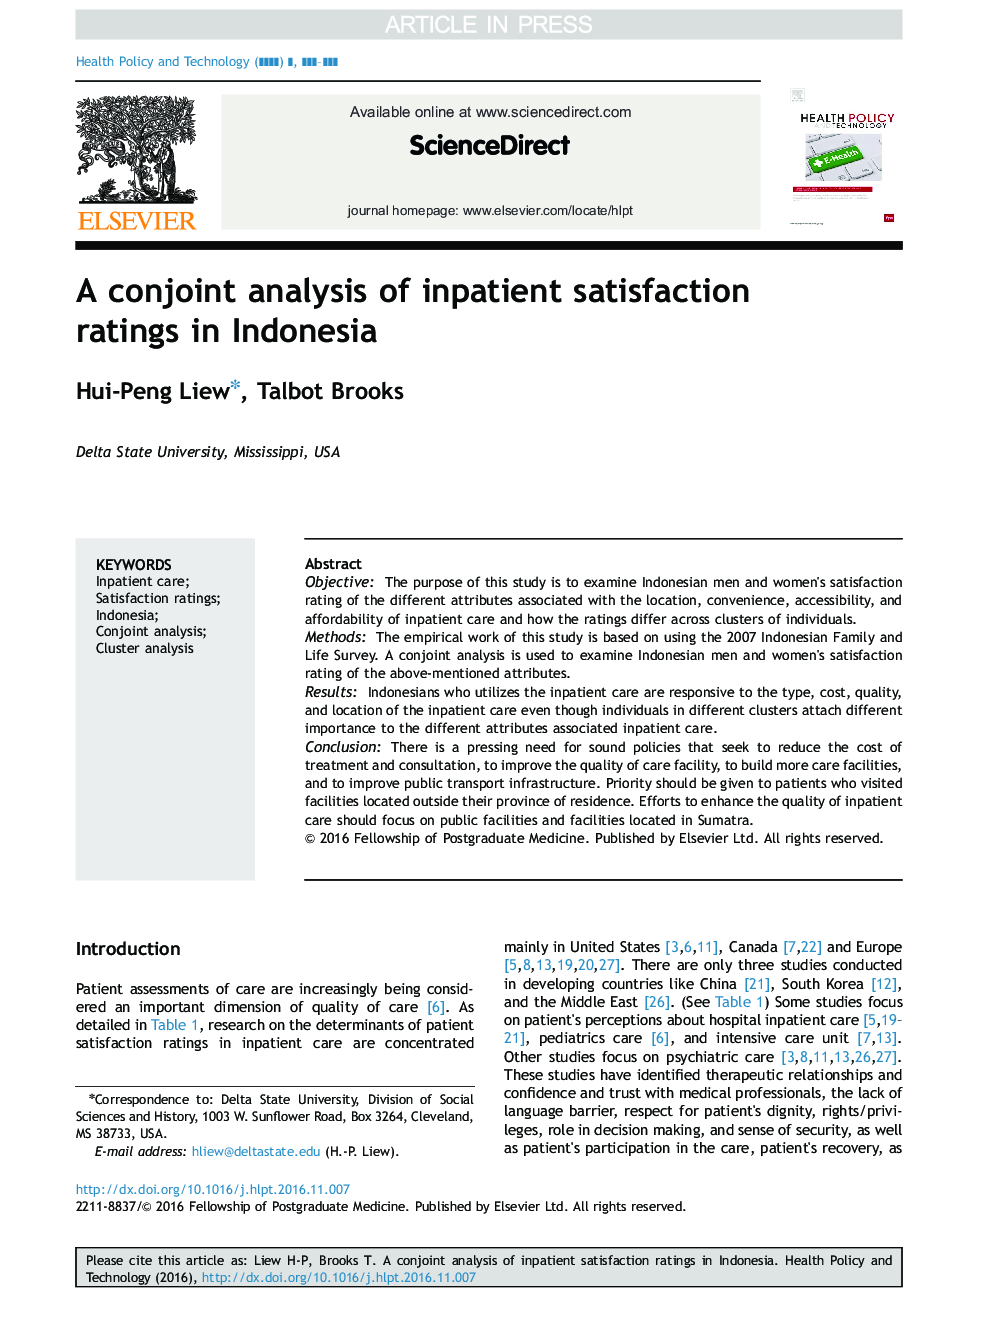 یک تجزیه و تحلیل مشترک رتبه بندی رضایت بیماران بستری در اندونزی 